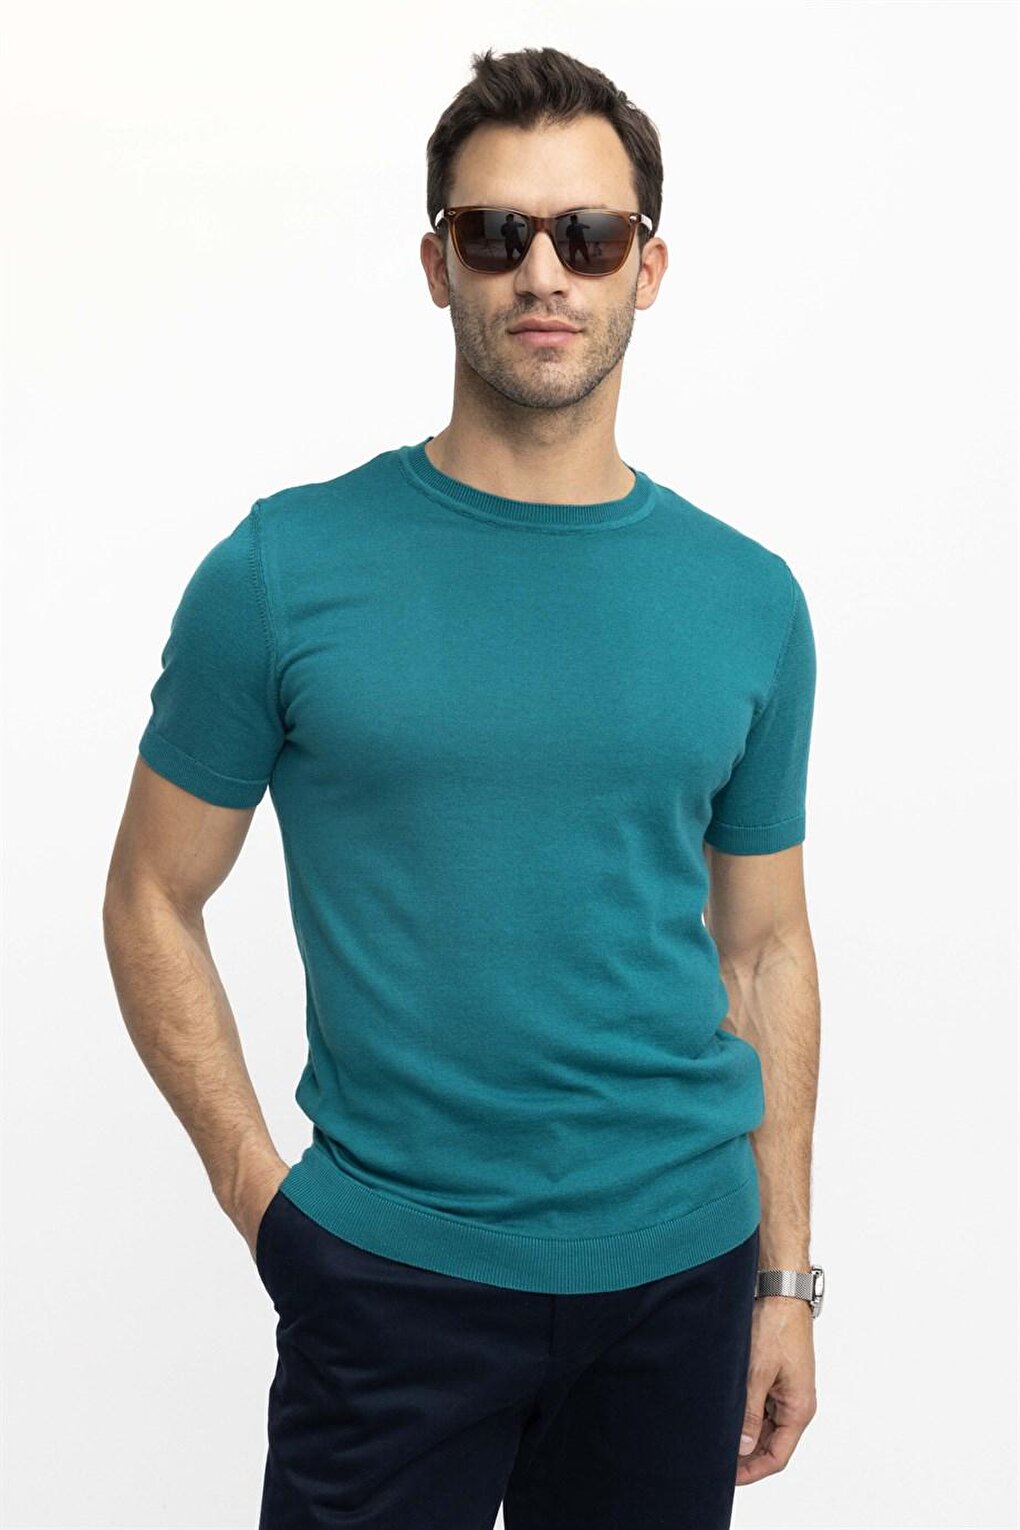 Мужская приталенная хлопковая трикотажная футболка с круглым вырезом зеленая футболка TUDORS